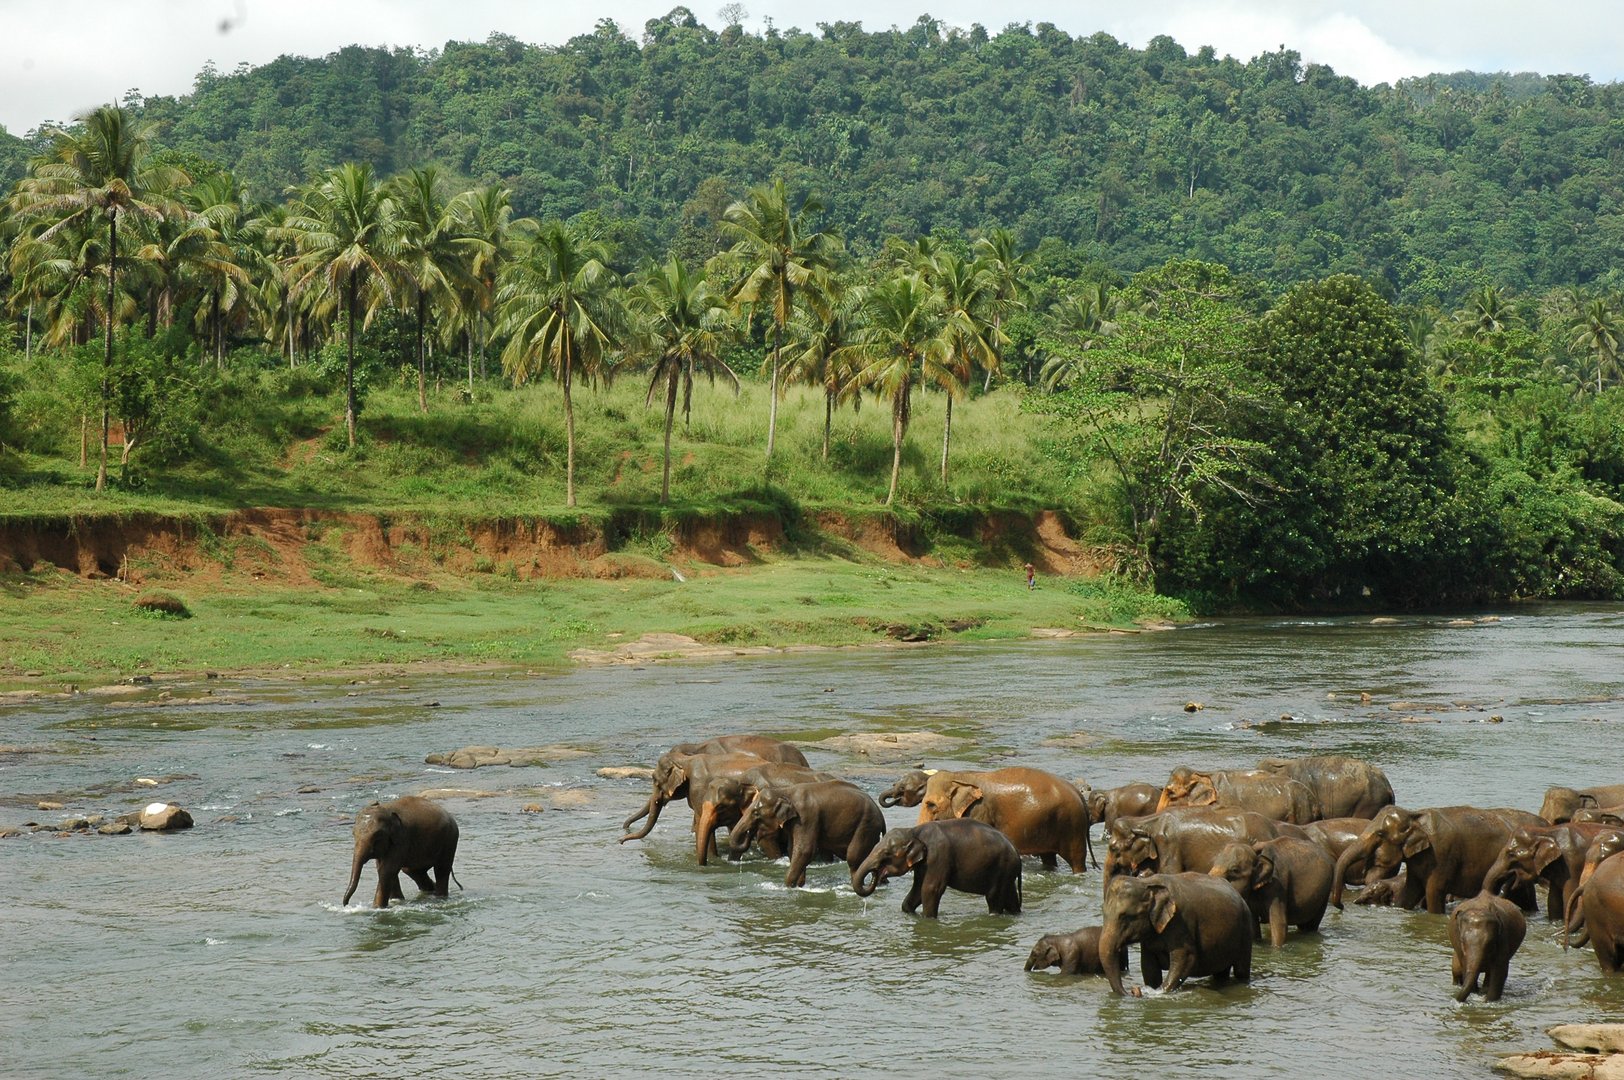 pinnawala sri lanka elephant orphange mysrilankatravel elaphant bathing